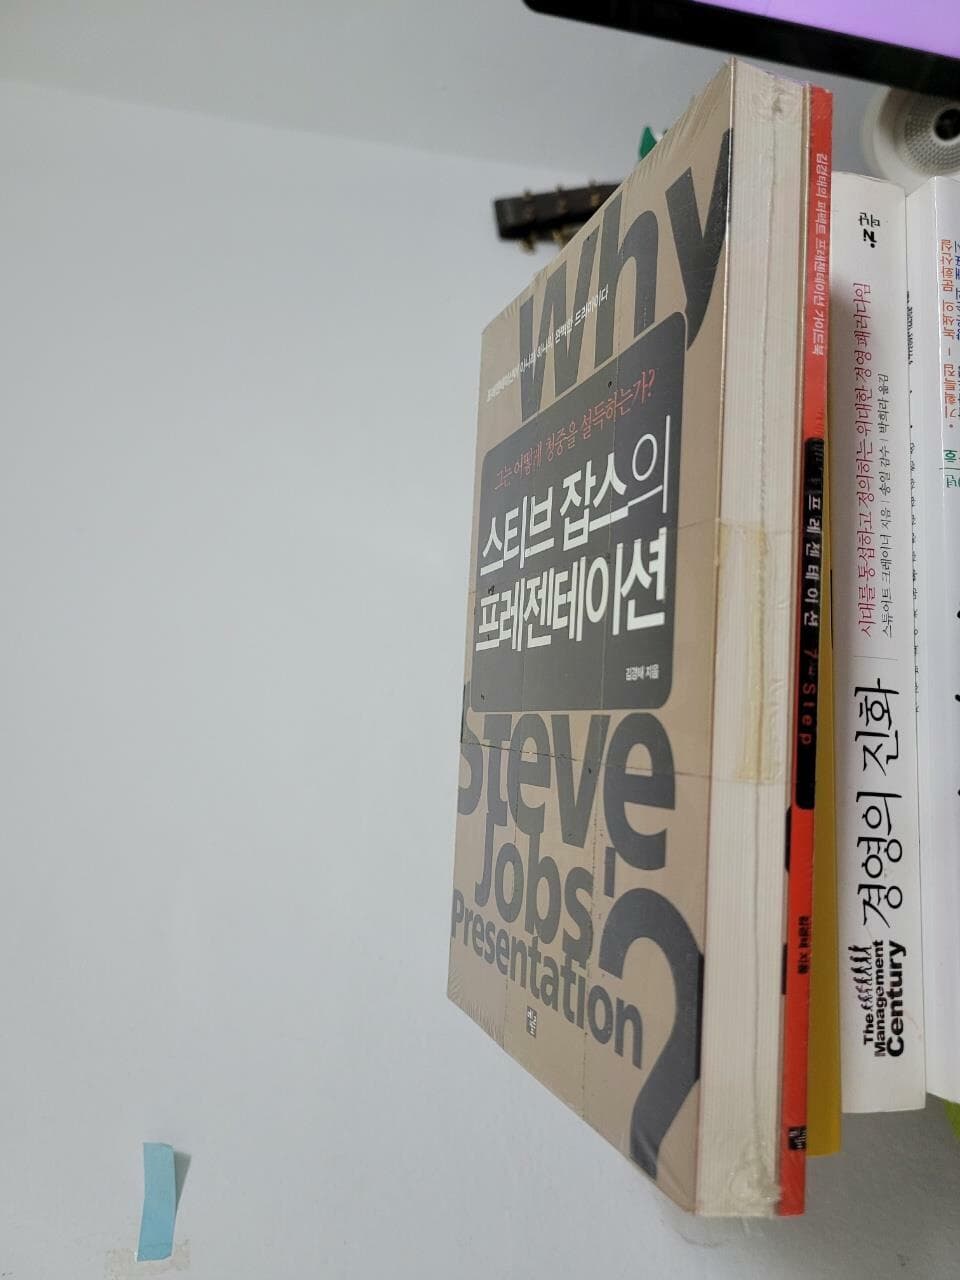 스티브 잡스의 프레젠테이션+  김경태의 퍼펙트 프리젠테이션 가이드북 (2권 세트)- 그는 어떻게 청중을 설득하는가?  